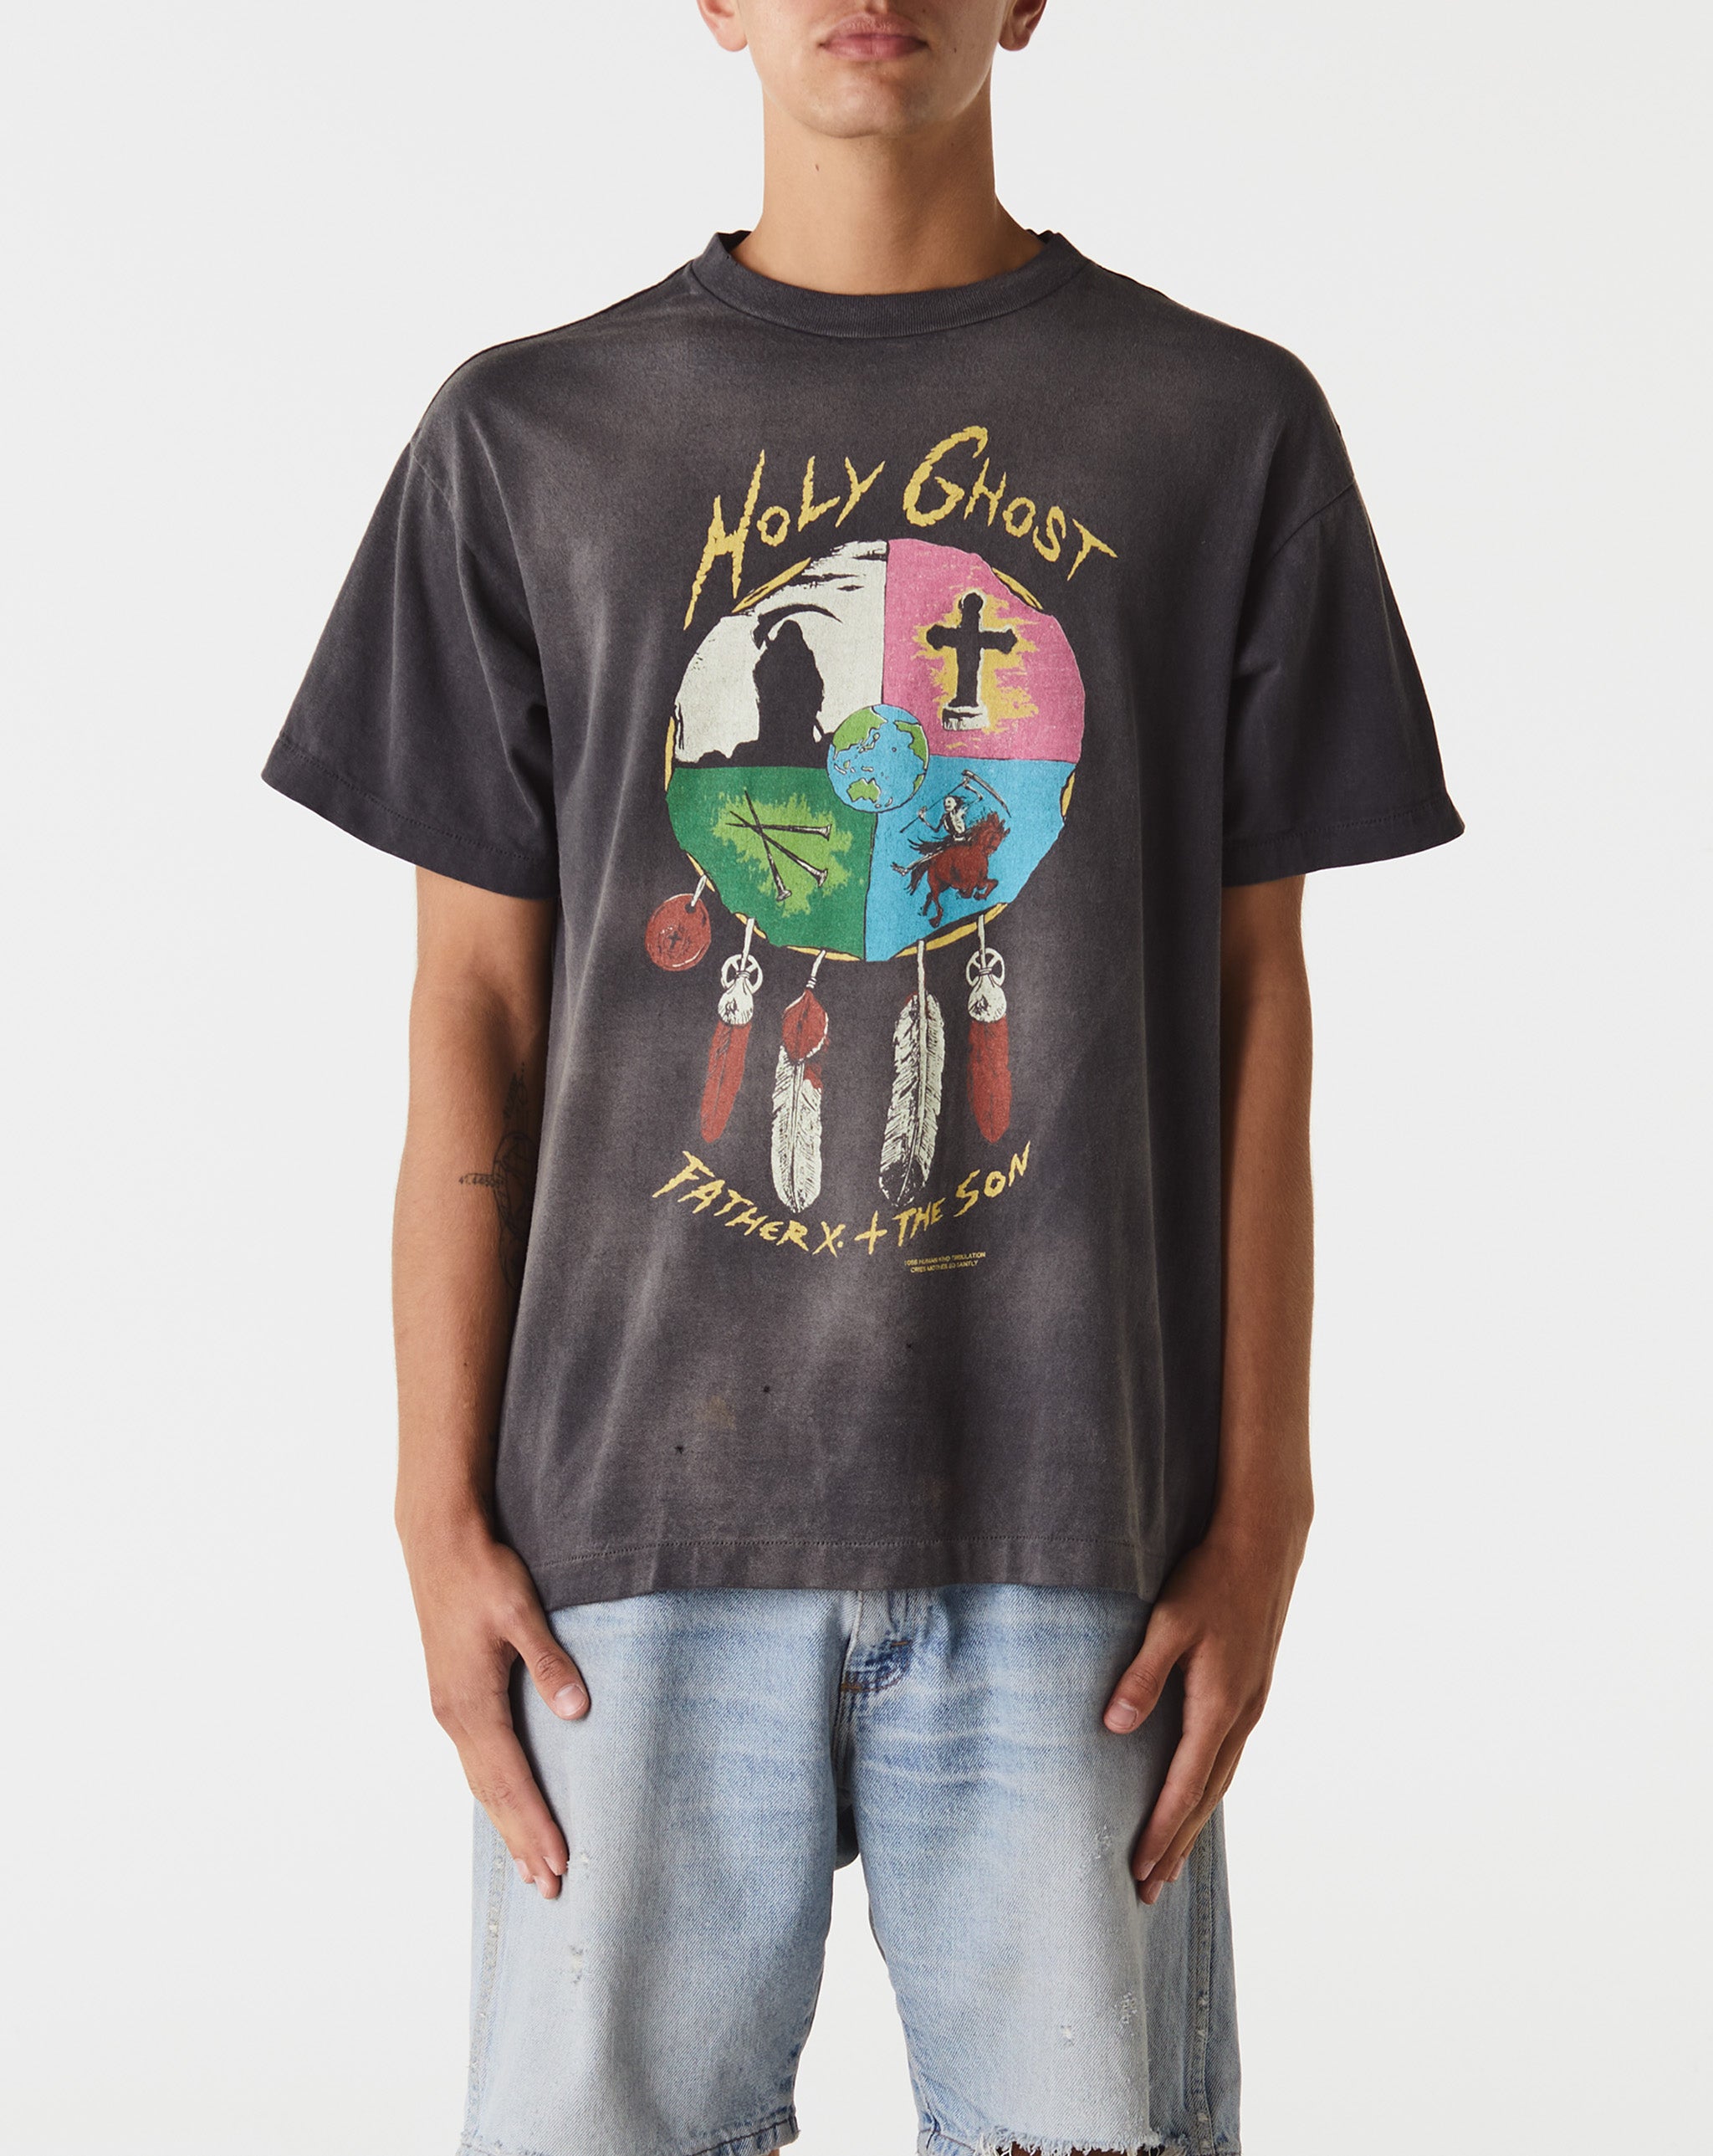 Saint Michael Holy Ghost T-Shirt  - Cheap Urlfreeze Jordan outlet